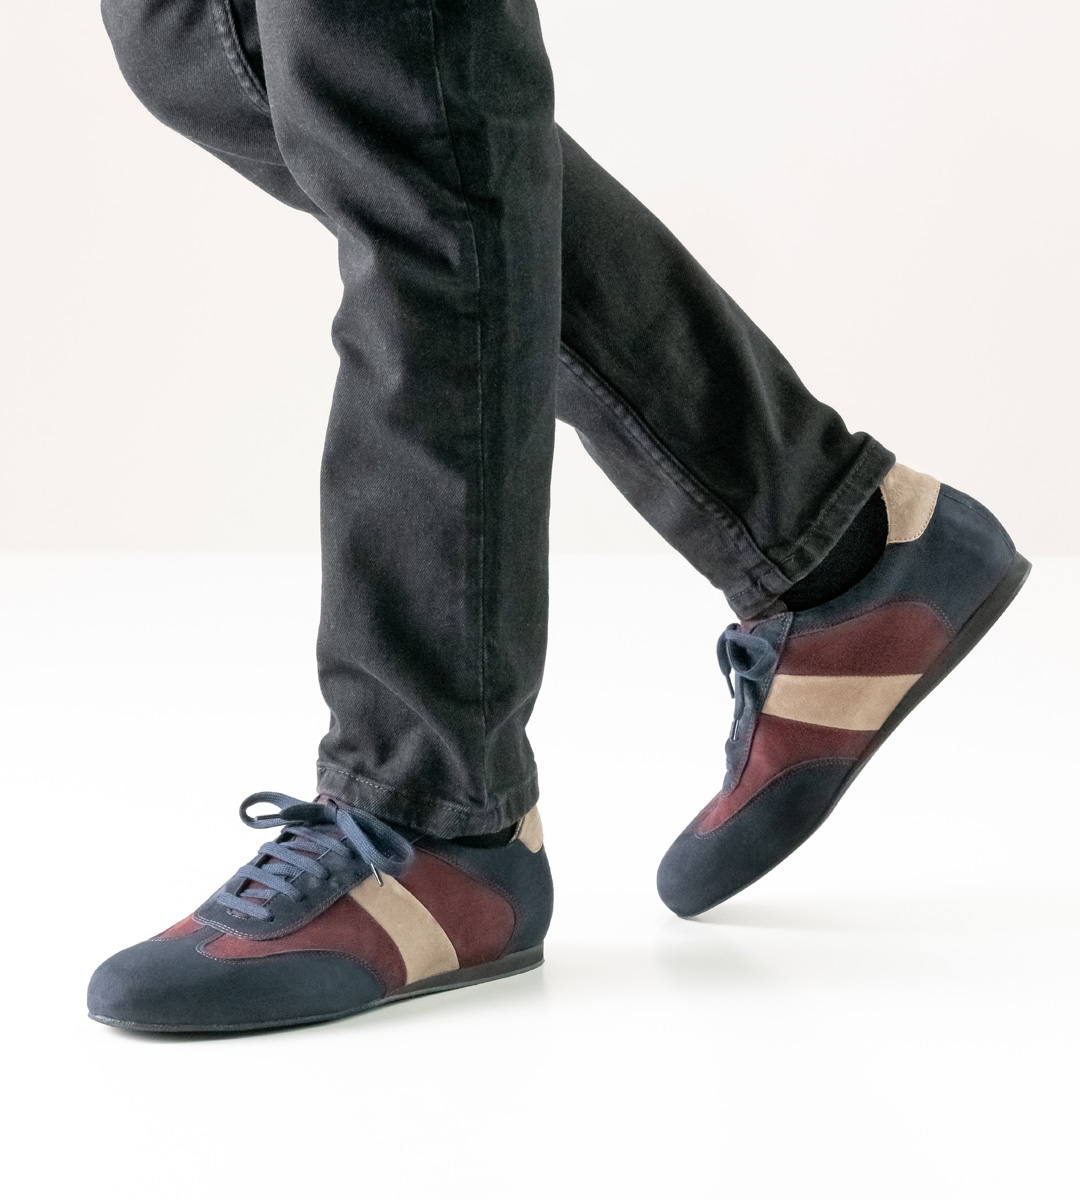 schwarze Jeans in Kombination mit 1,5 cm hohem Werner Kern Herrentanzschuh